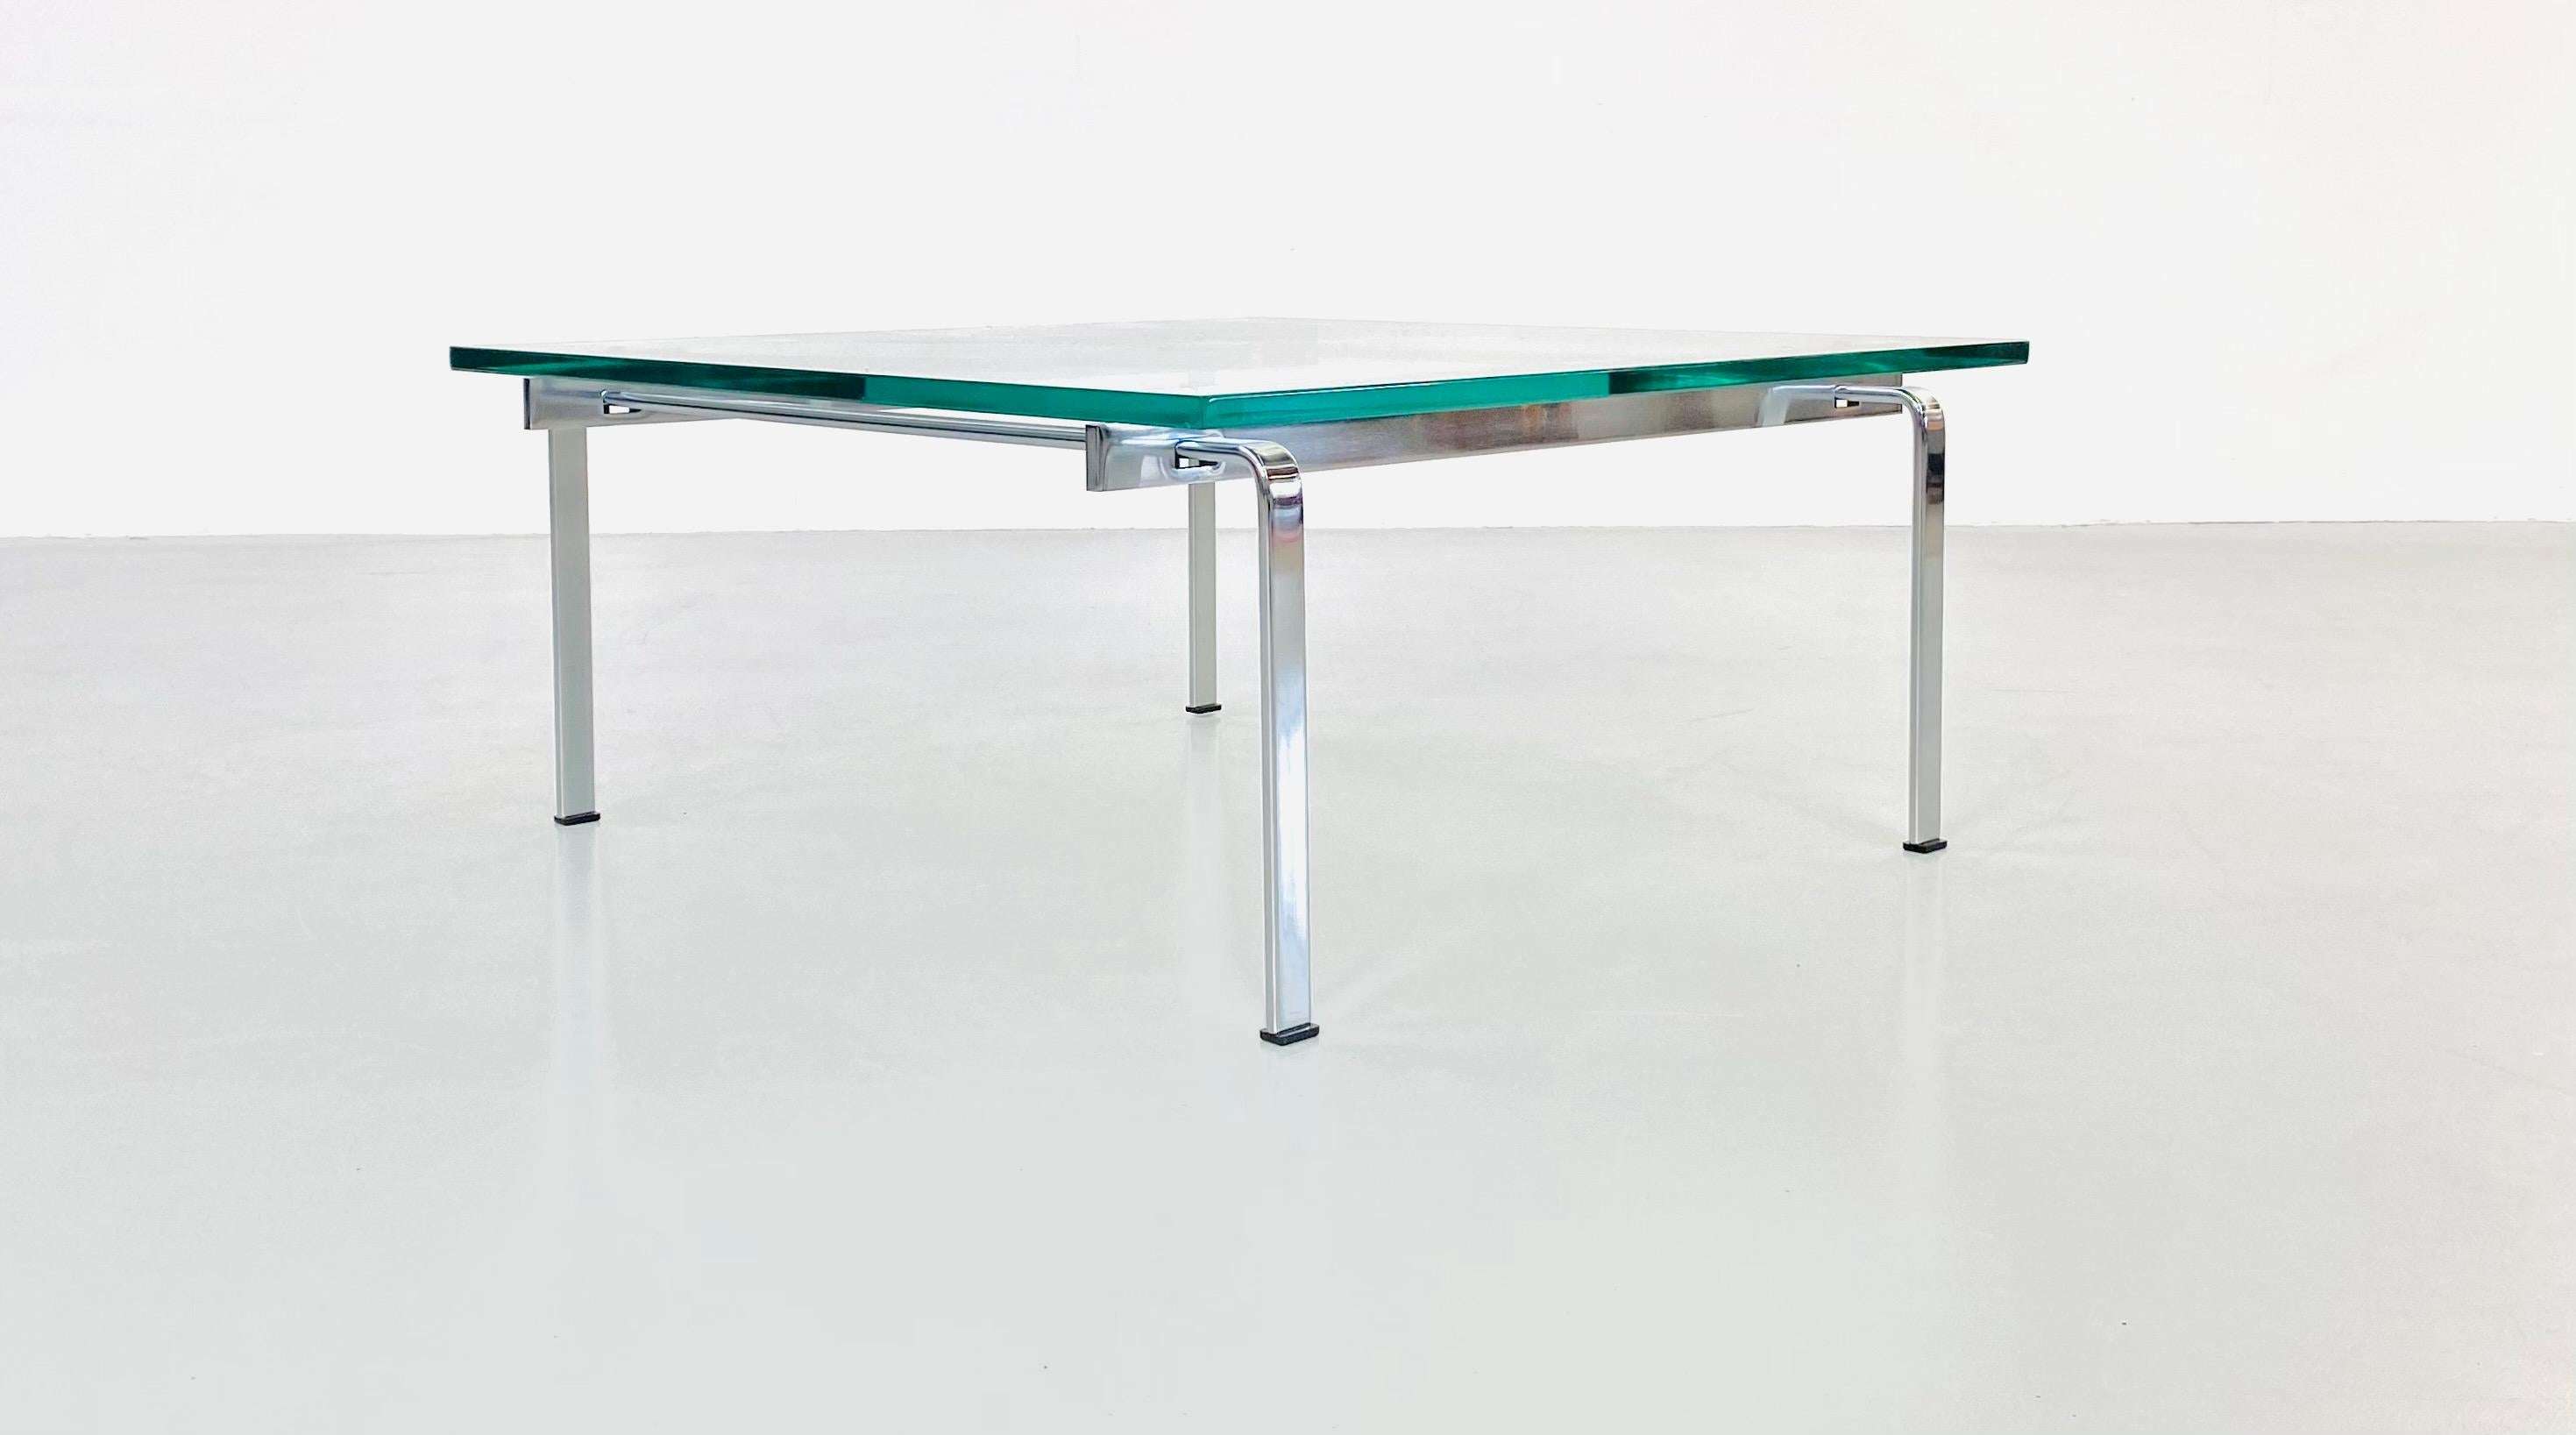 Cette table en verre et en acier plat a été conçue par Preben Fabricius (1931-1984) et Jørgen Kastholm (1931-2007). Ensemble, ils ont créé un studio de design, Fabricius & Kastholm, en 1961. Ces deux designers danois se sont attachés à créer des